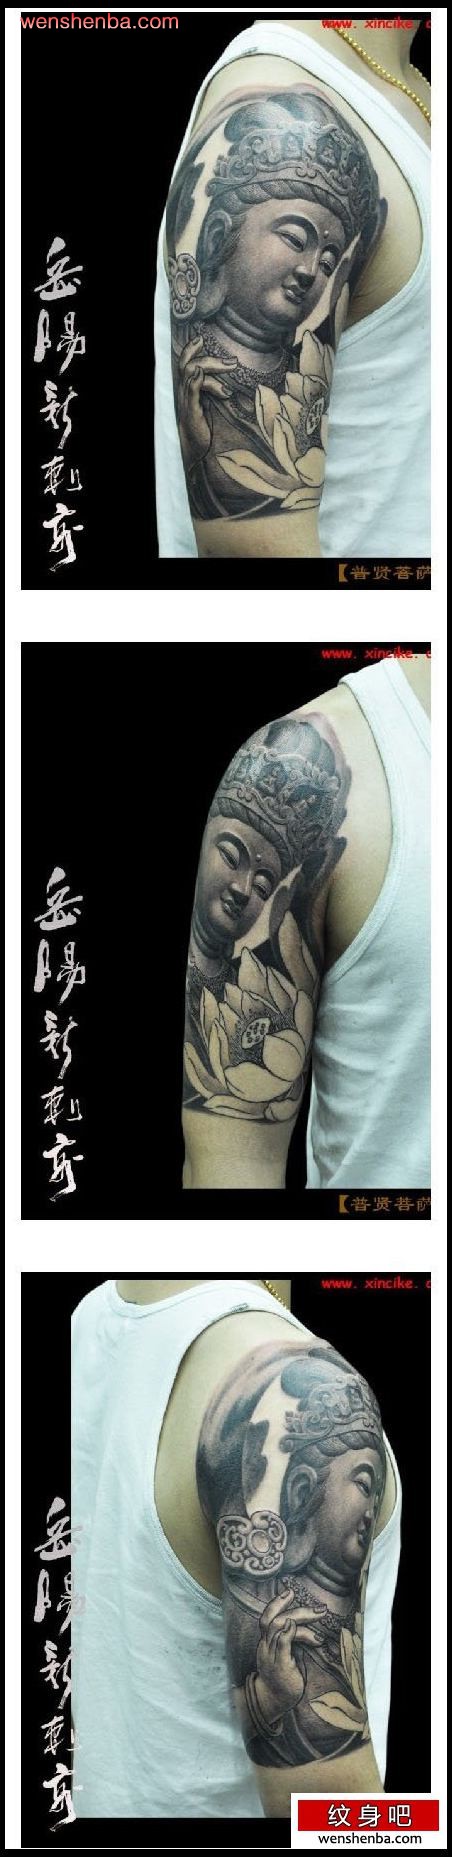 手臂个性权威的一枚石雕普贤菩萨纹身